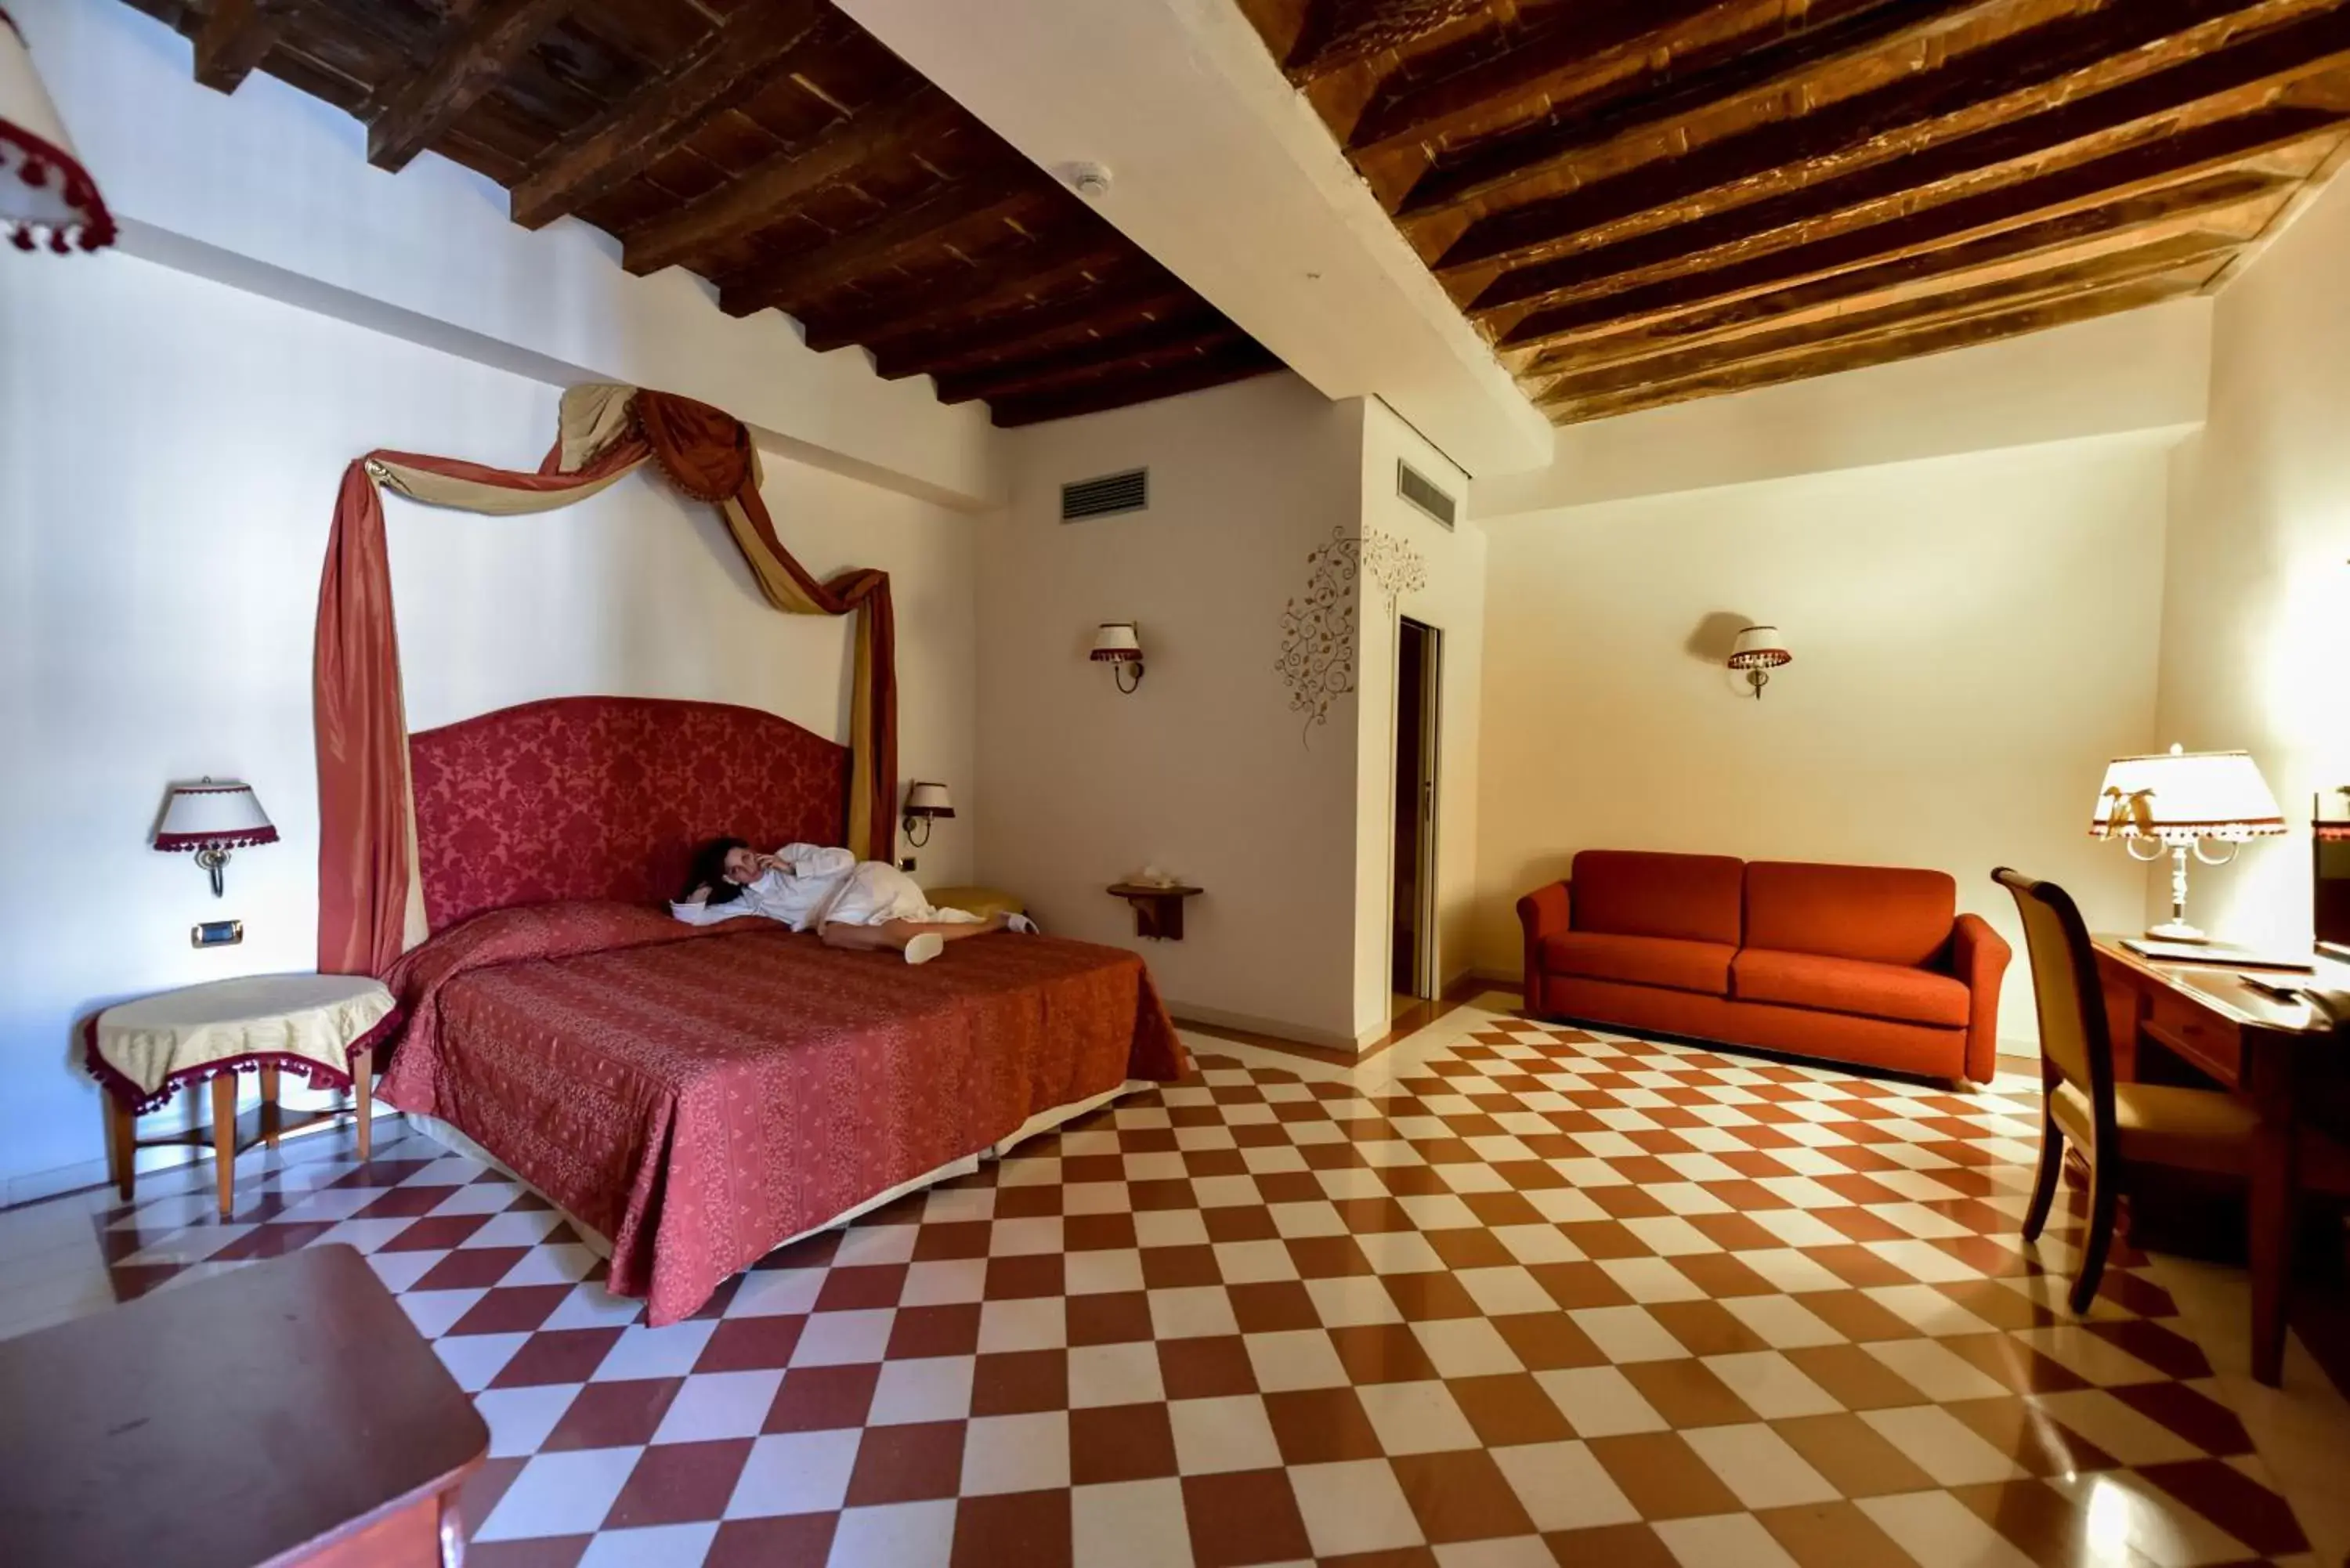 Bedroom, Room Photo in Antica Dimora alla Rocca